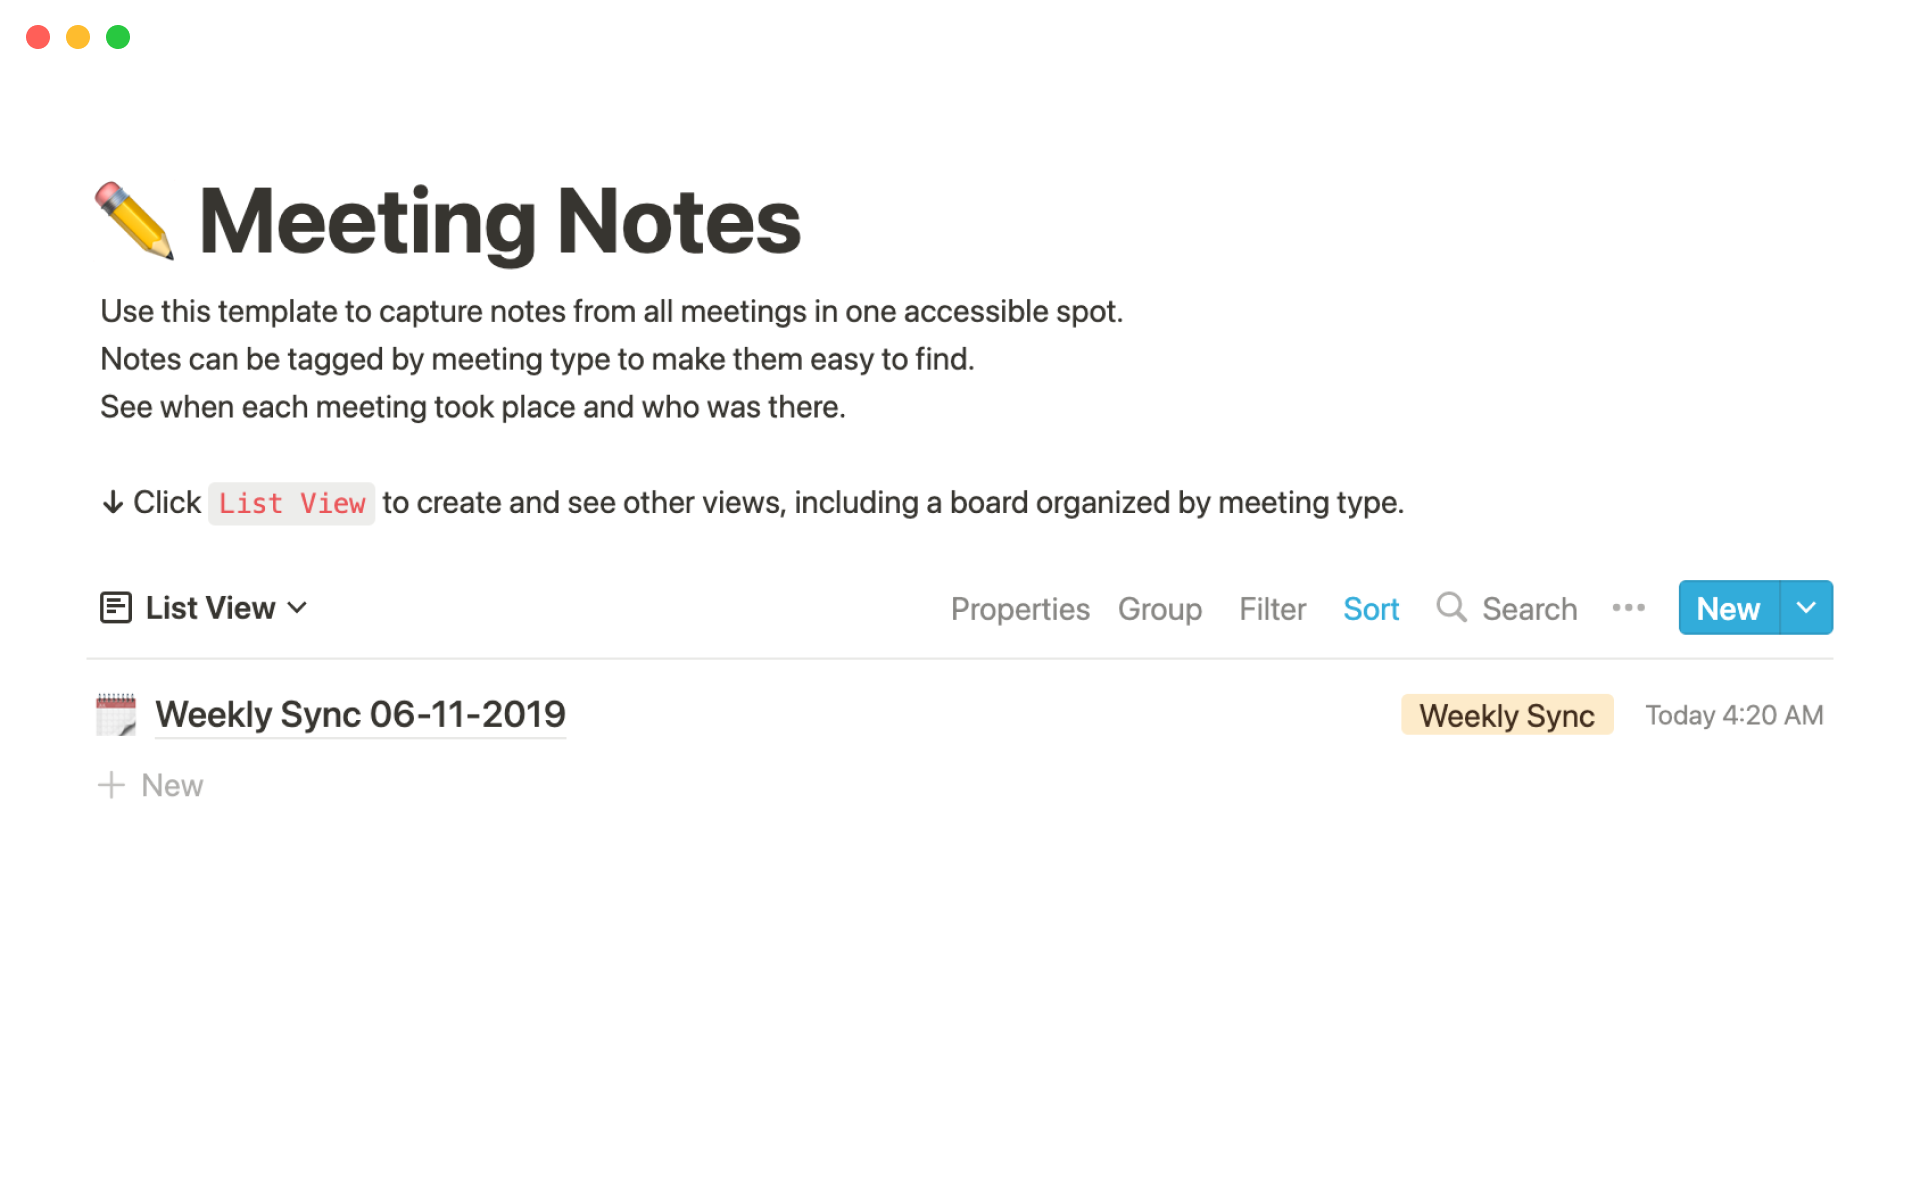 Uma prévia do modelo para Marketing meeting notes